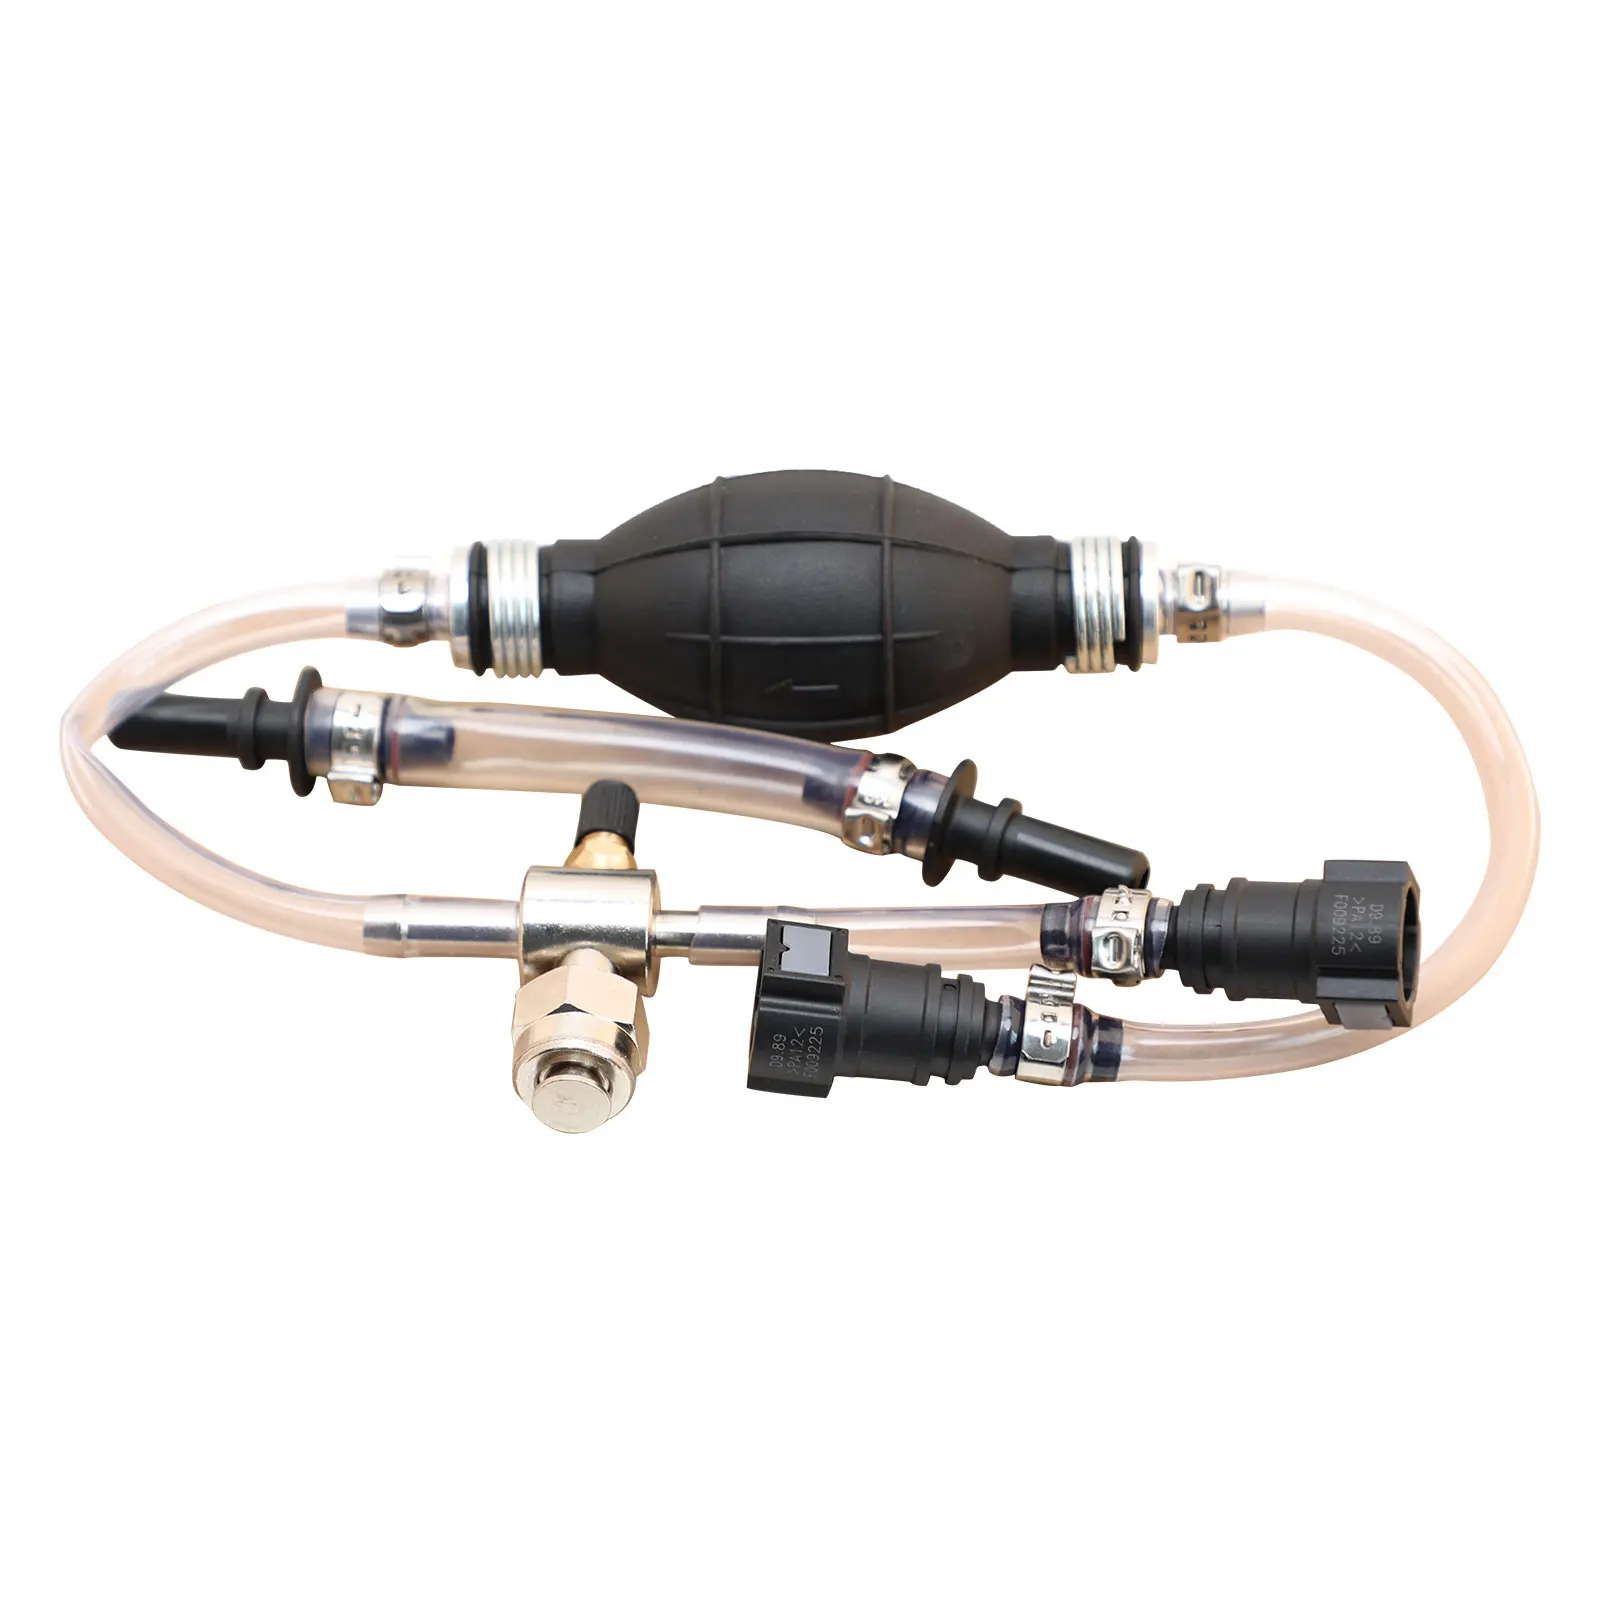 Diesel Fuel System Bleeder Tool Adaptor Kit For Ford Diesel System Bleed and Primer Set Car Repair Tool Air Hand Pump Tool